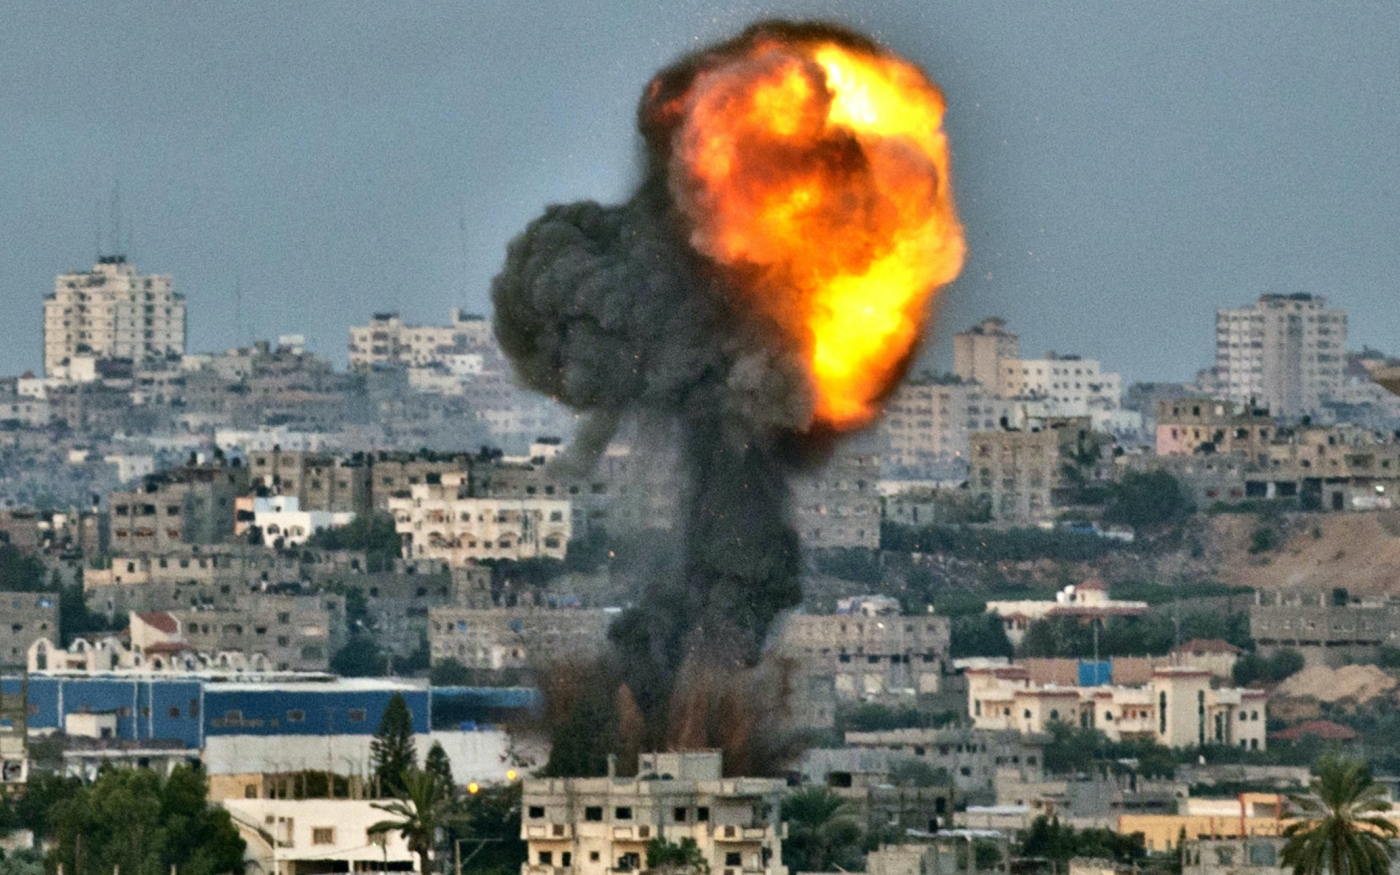 De la fumée s’échappe d’un site visé par une frappe aérienne israélienne dans la bande de Gaza, le 16 novembre 2012 (AFP)